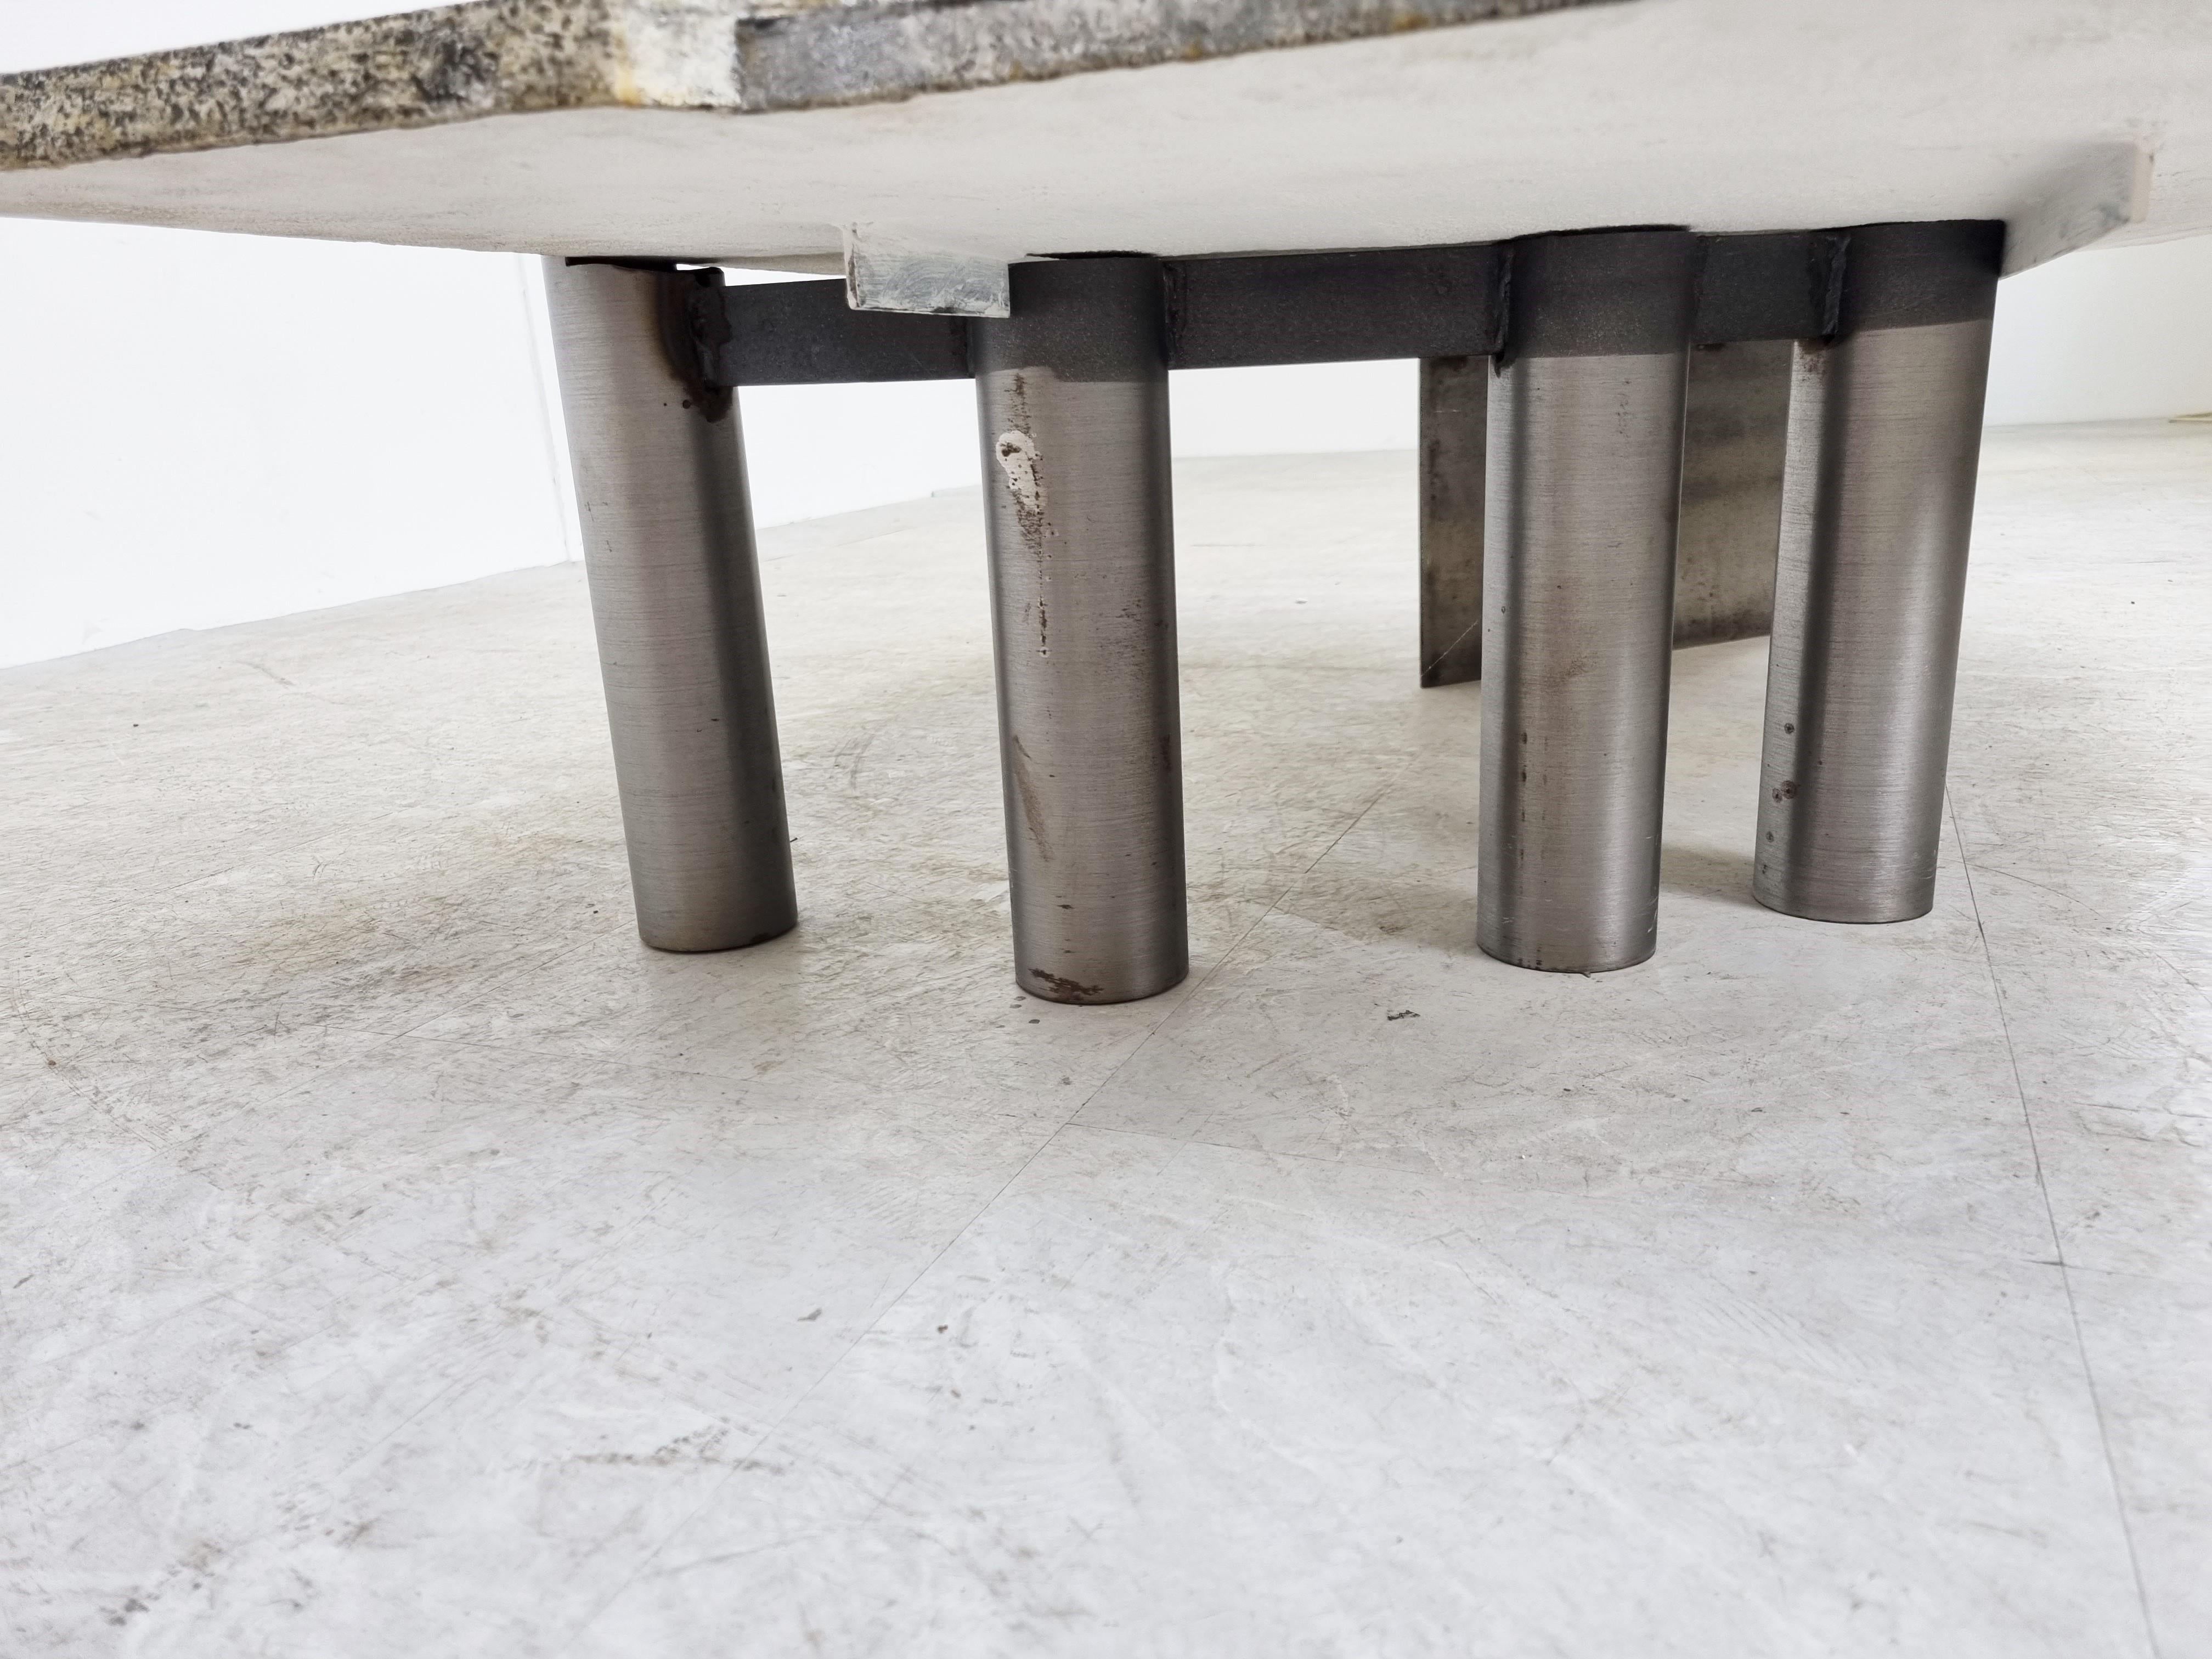 Brutalistischer Couchtisch, hergestellt von Pia Manu.

Der Tisch besteht aus einer gemischten Keramik- und Aluminiumplatte mit einem Fuß aus Stahl und Aluminium.

Schöner, einzigartiger Couchtisch mit auffälligem Design.

Sonderanfertigung für